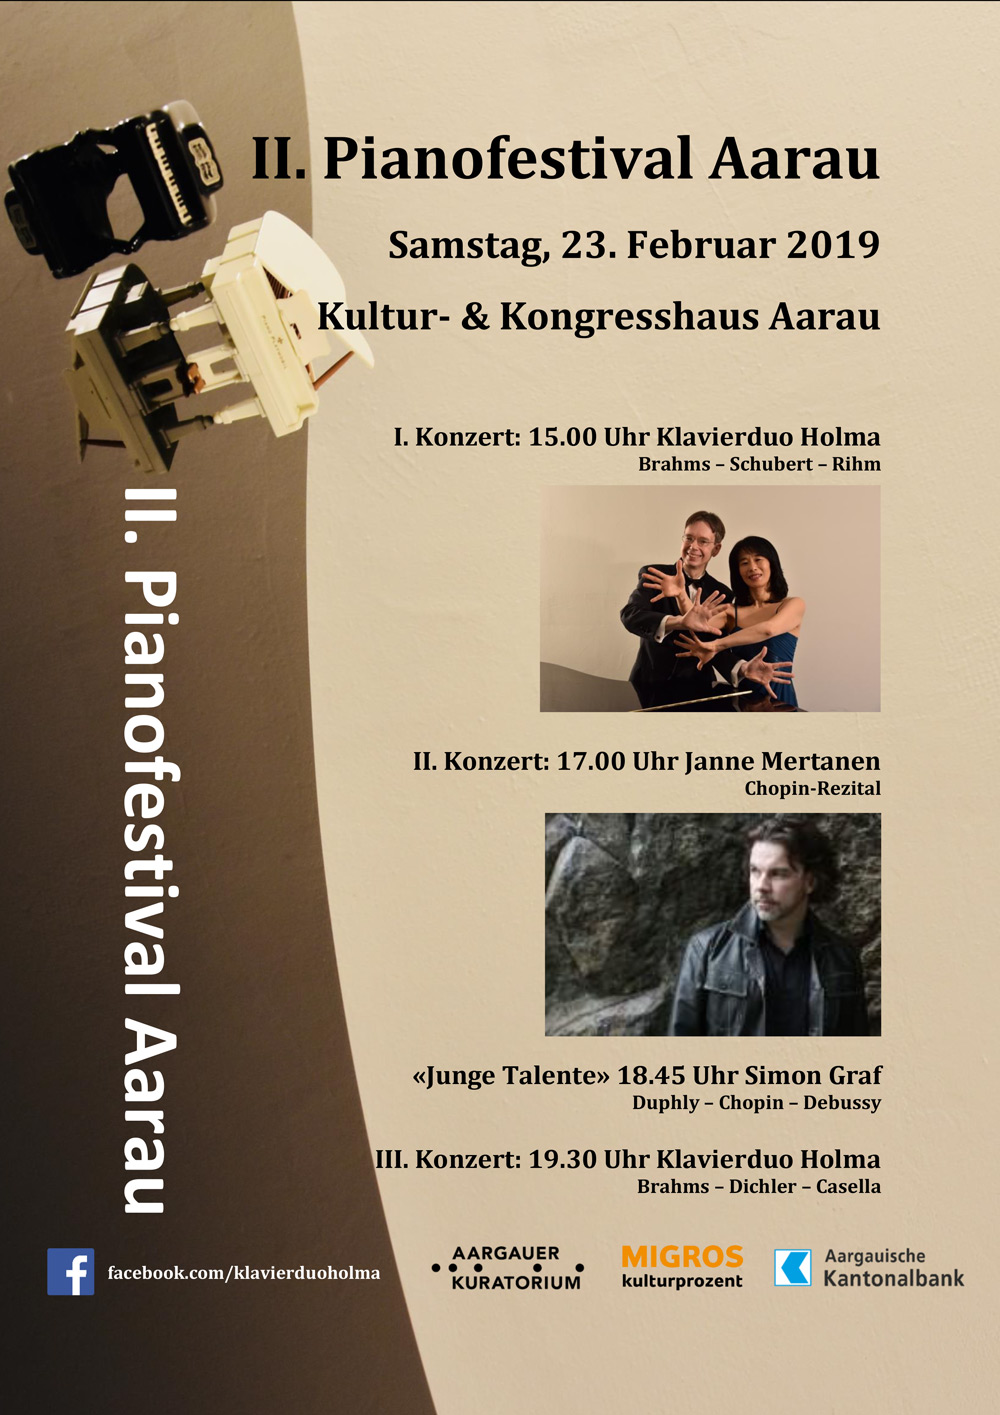 II. Pianofestival Aarau 2019